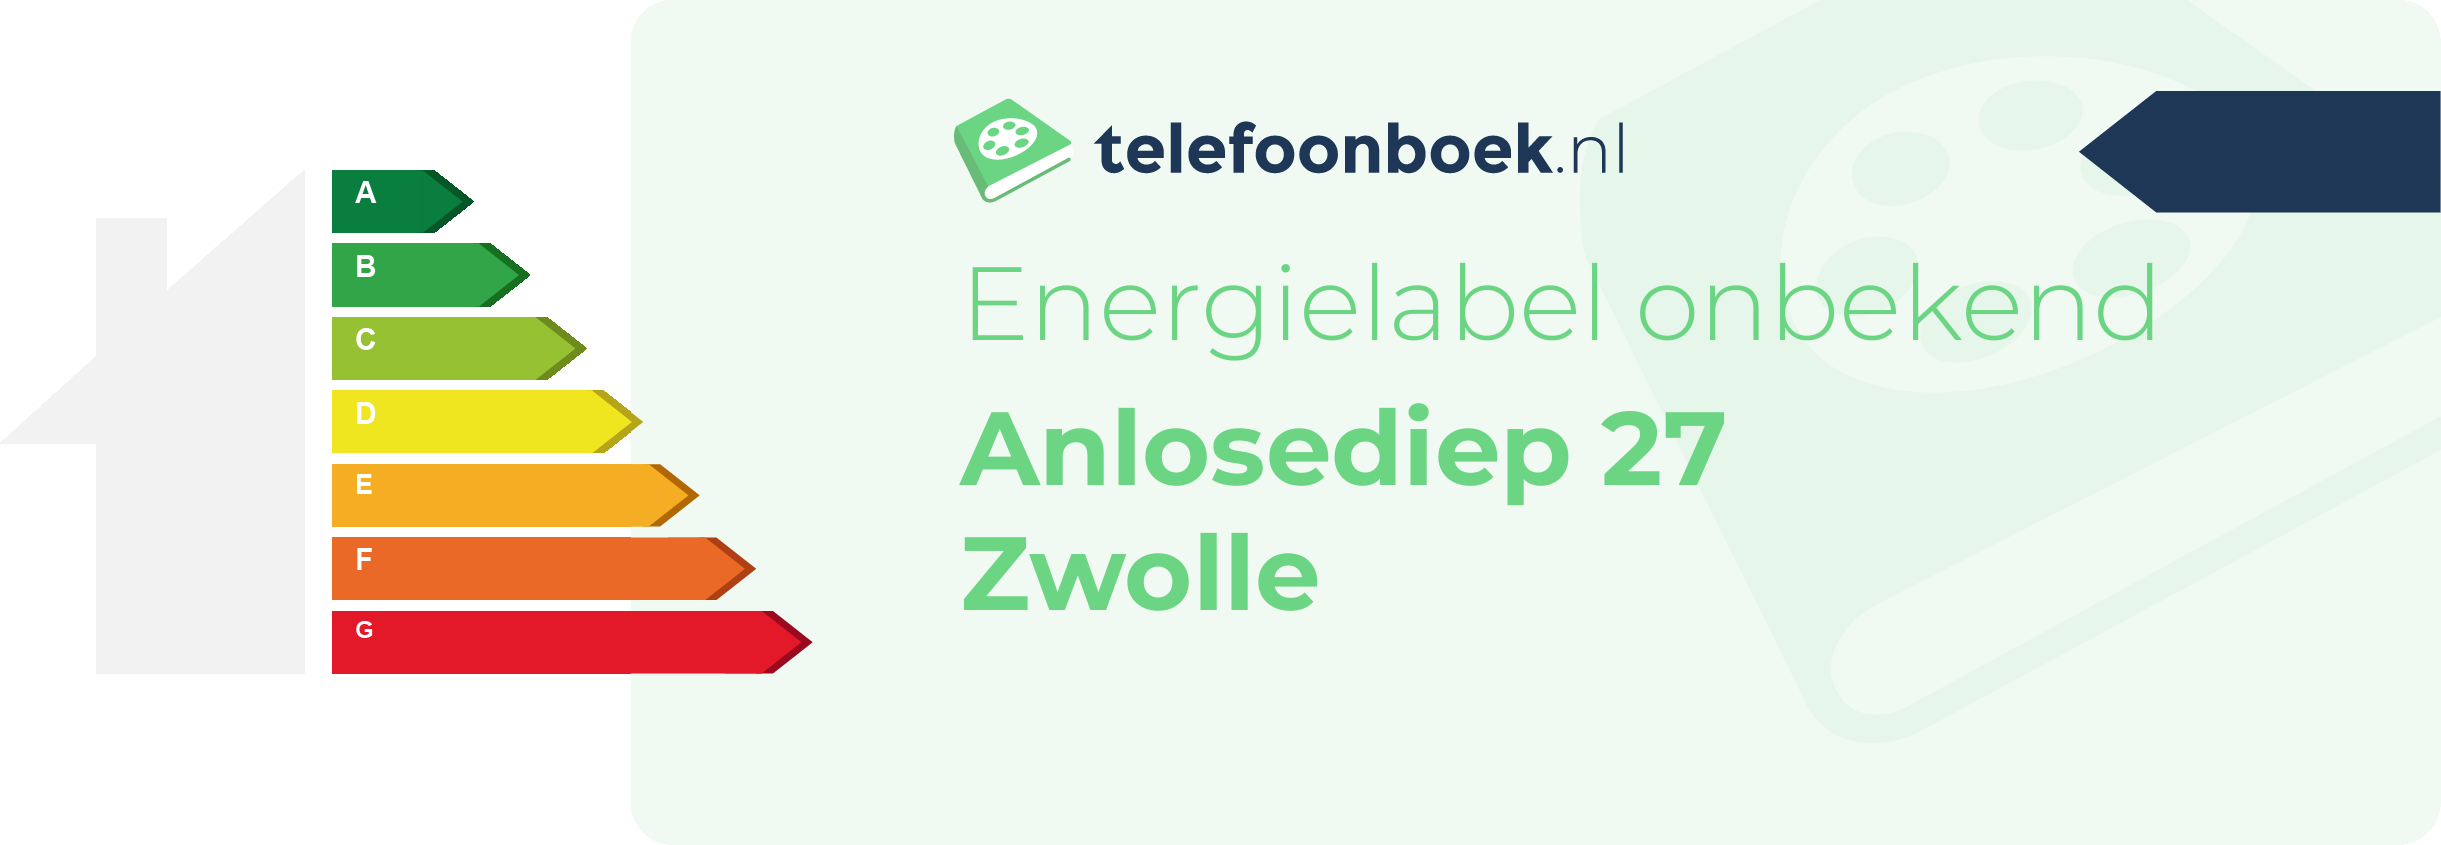 Energielabel Anlosediep 27 Zwolle